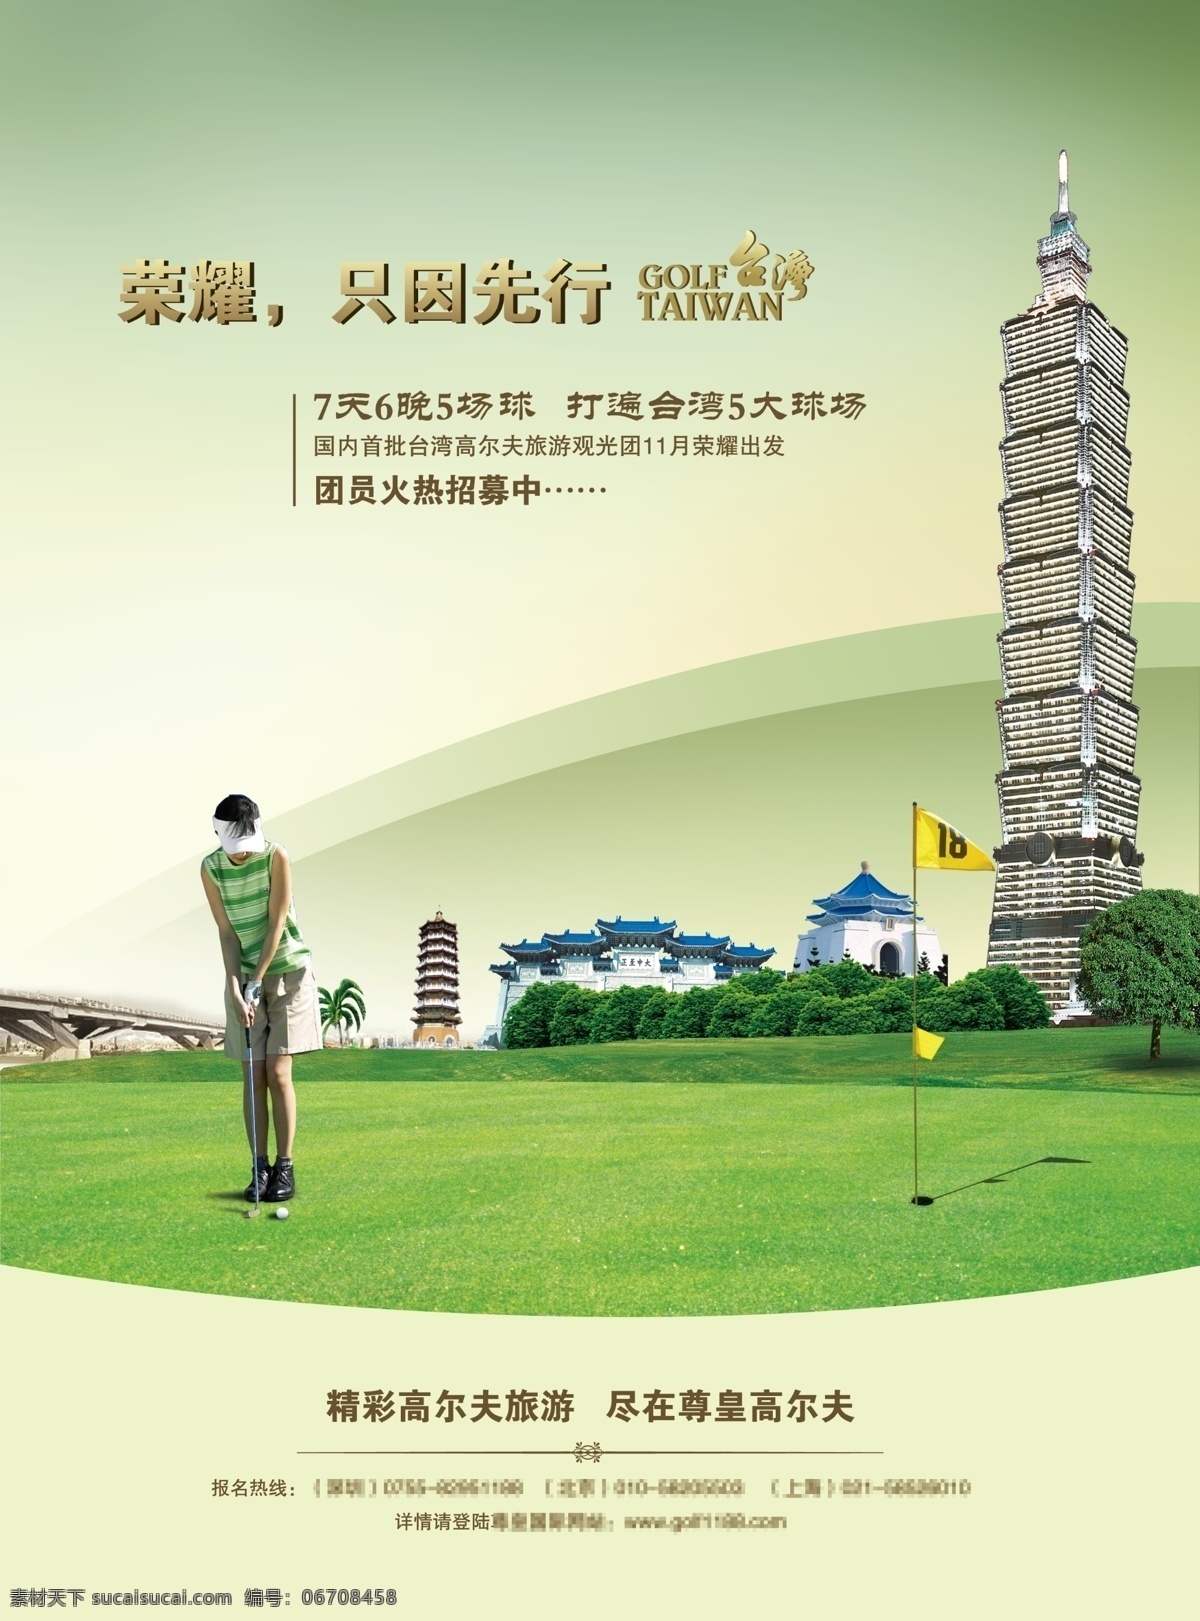 台湾 旅游 宣传海报 高尔夫 假期 101大厦 果岭 美女 选手 golf 草地 推杆 台湾景点 博物馆 旅游海报